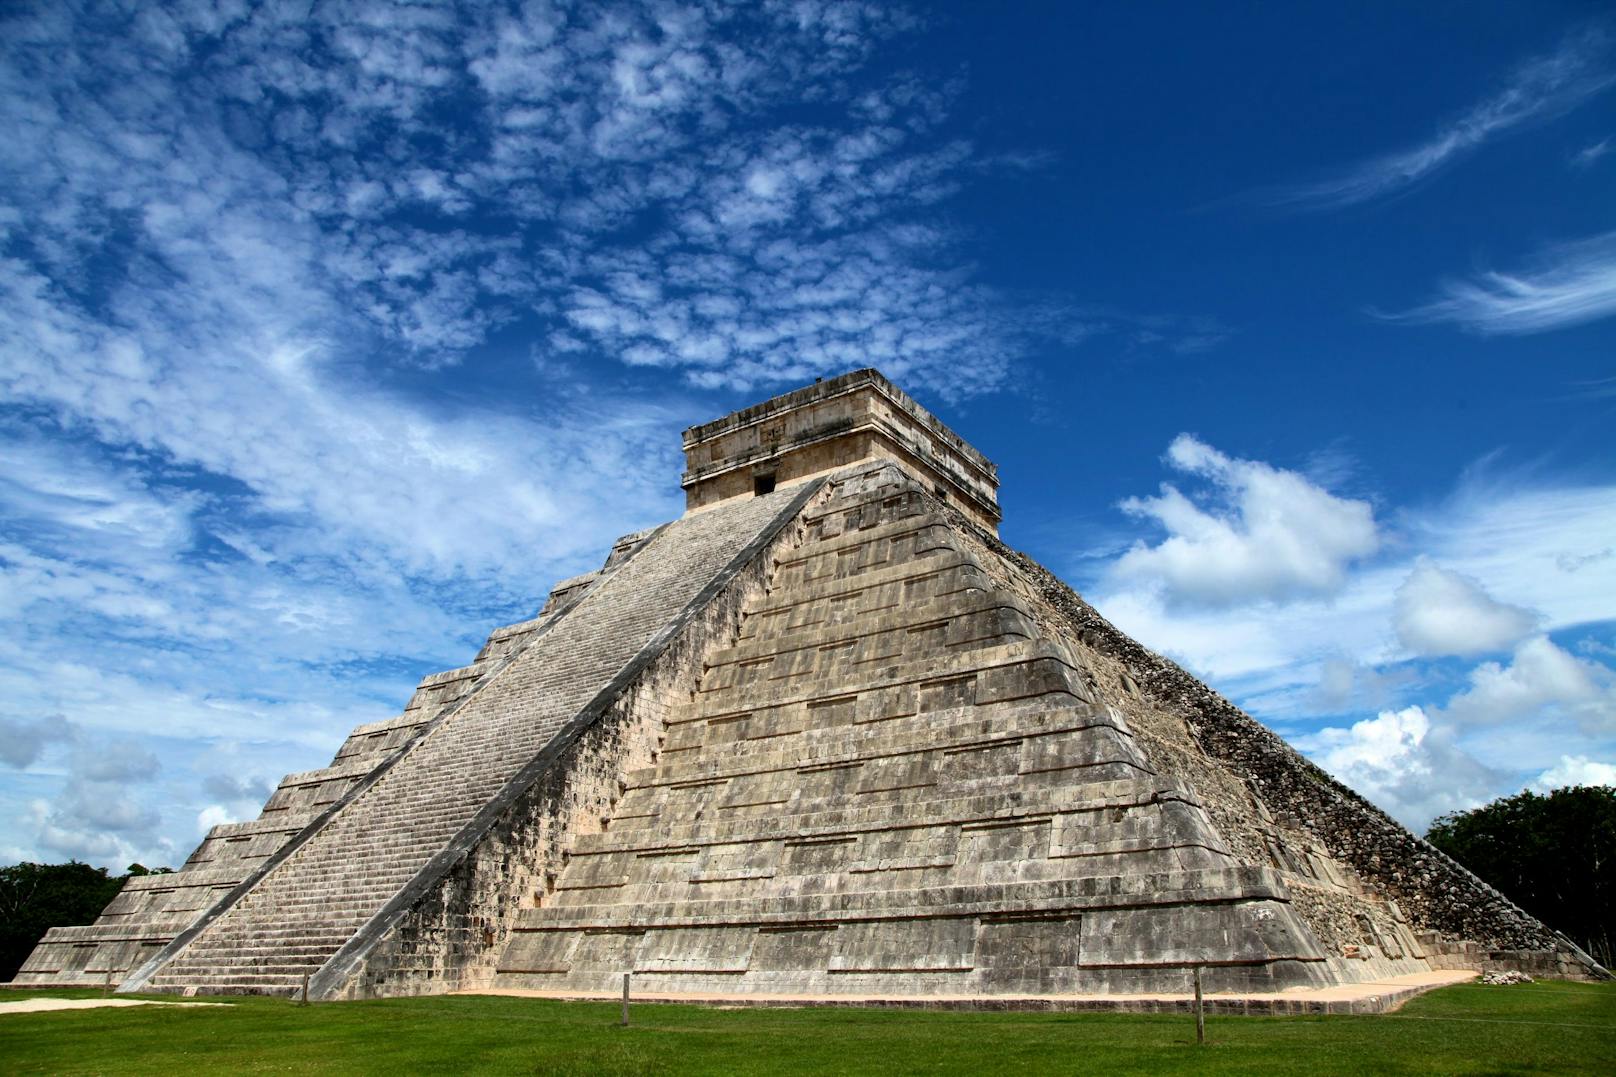 Die Planeten waren ohne Lichtverschmutzung mit bloßem Auge gut für die Maya erkennbar. Sie hatten ein tiefes Verständnis der Himmelsmechanik, was ihre Kultur prägte.